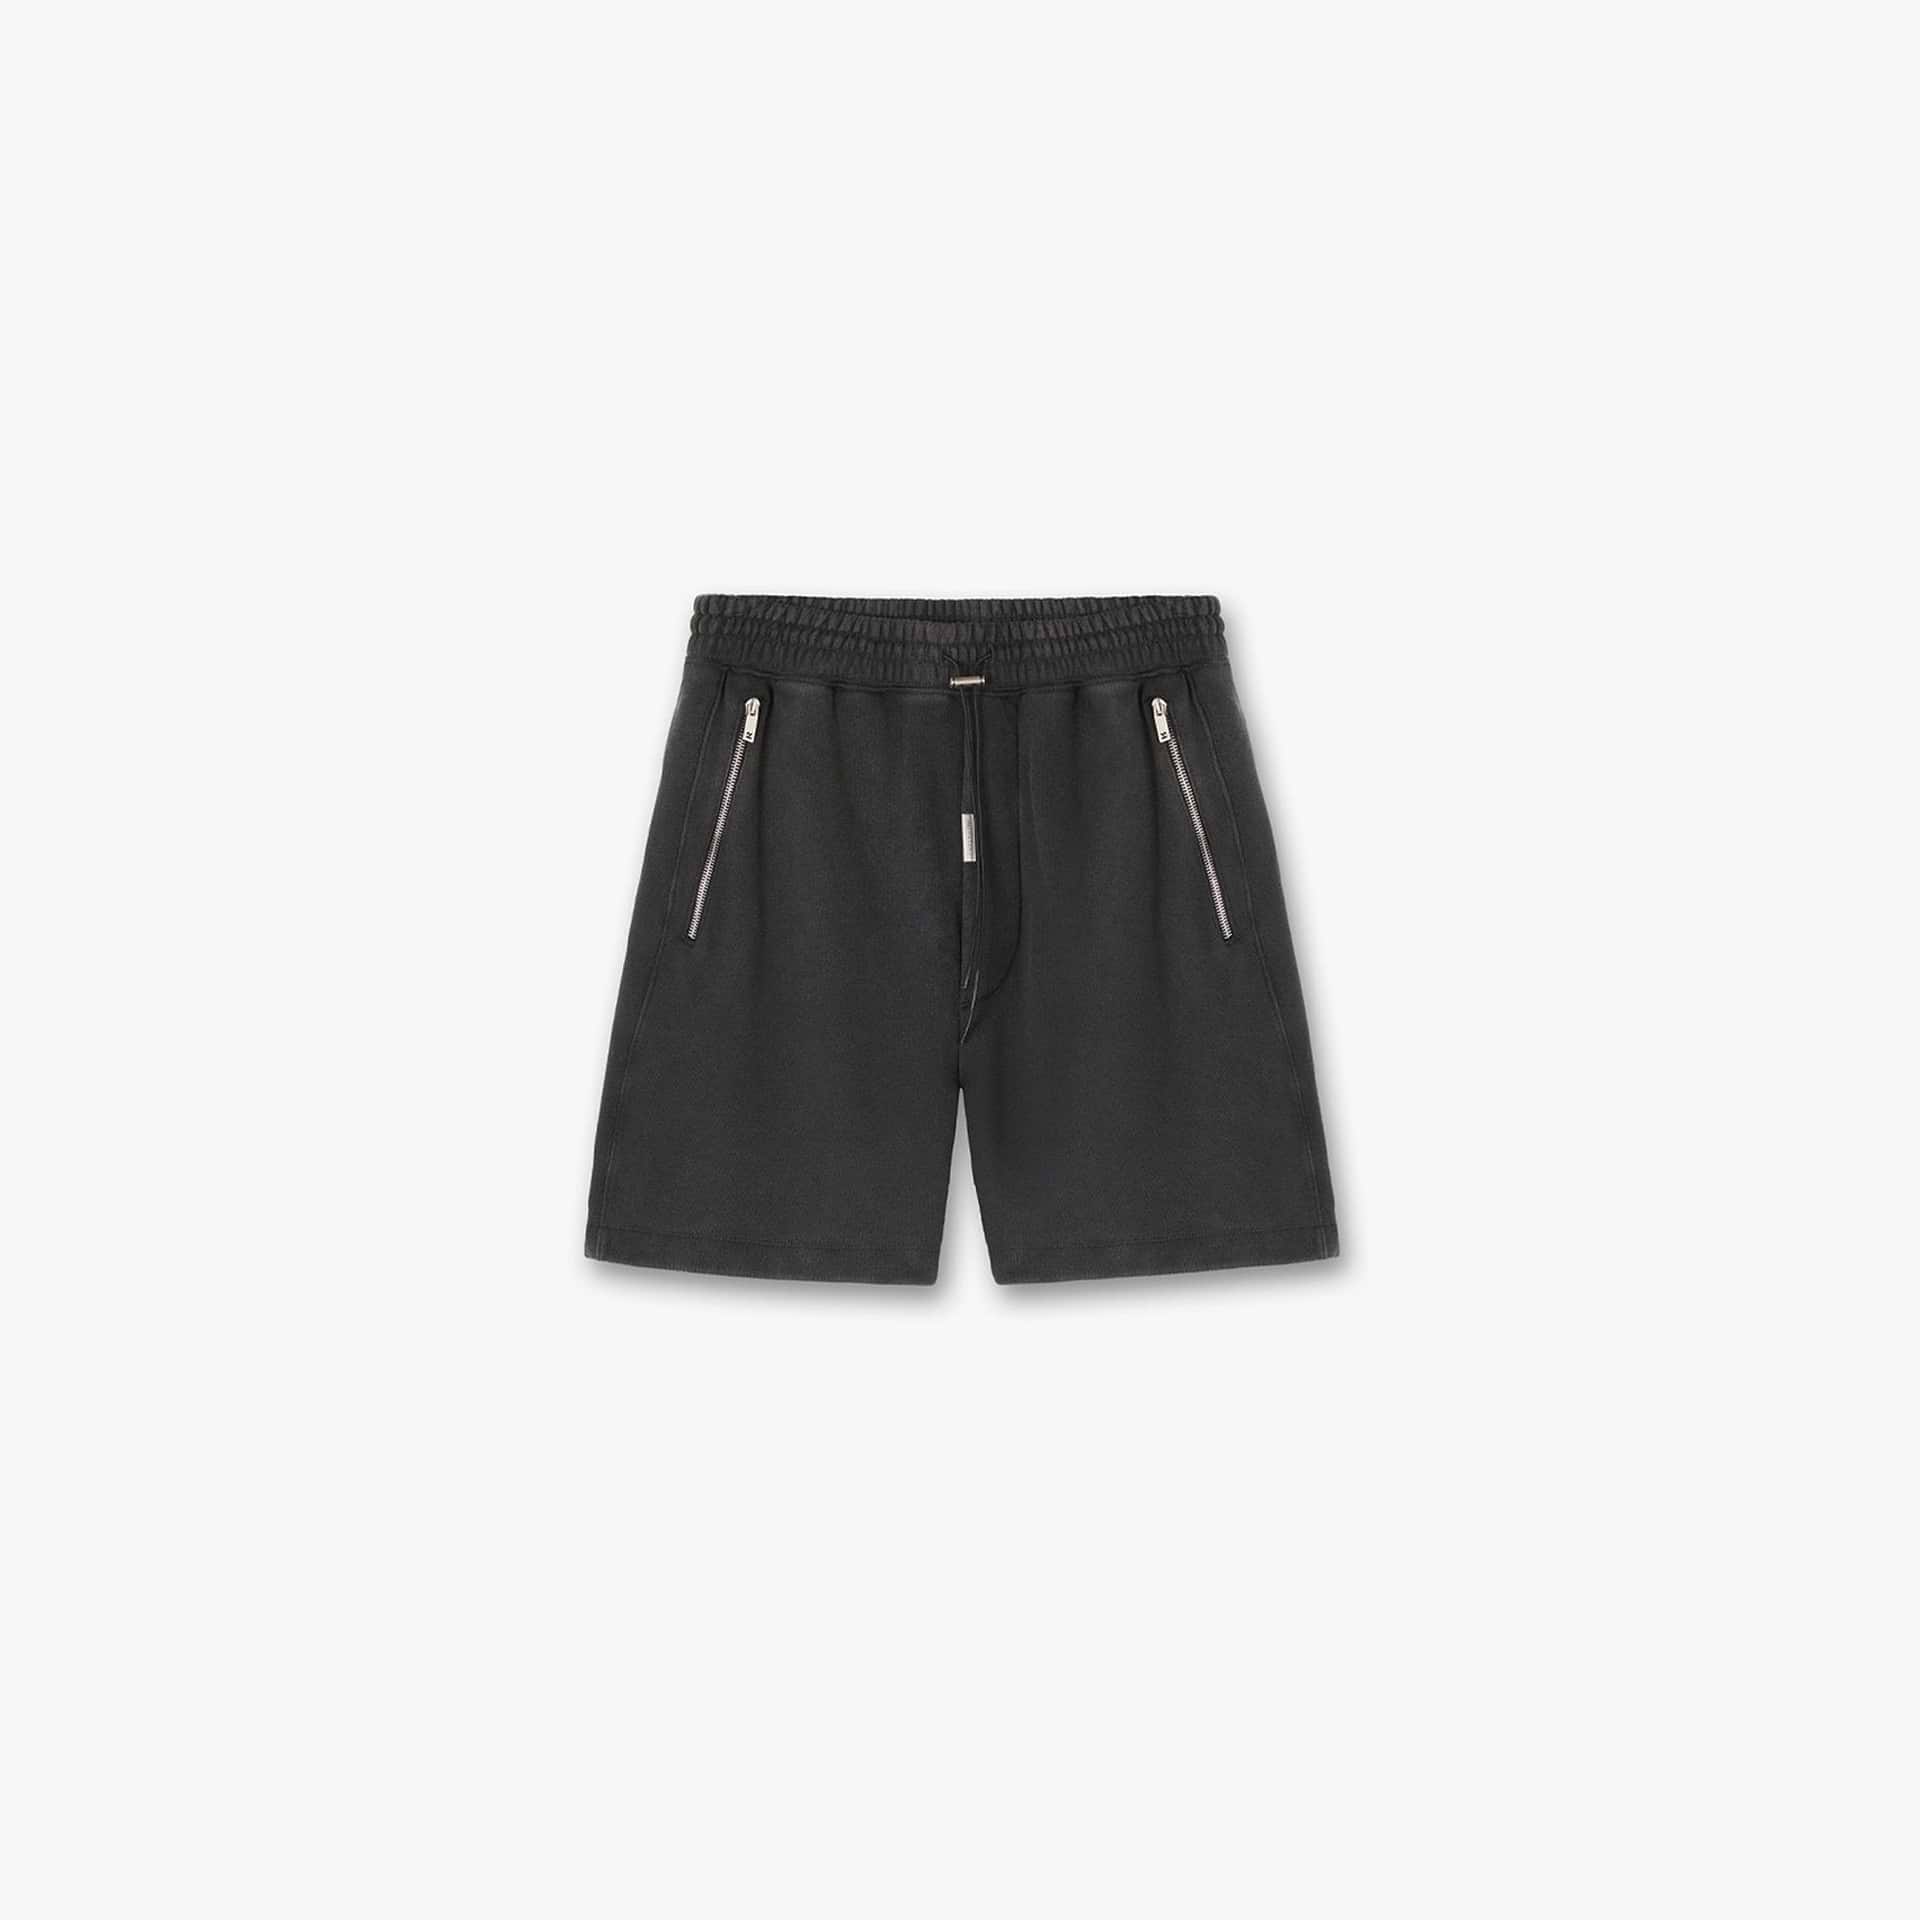 Blank Shorts - Vintage Black v1